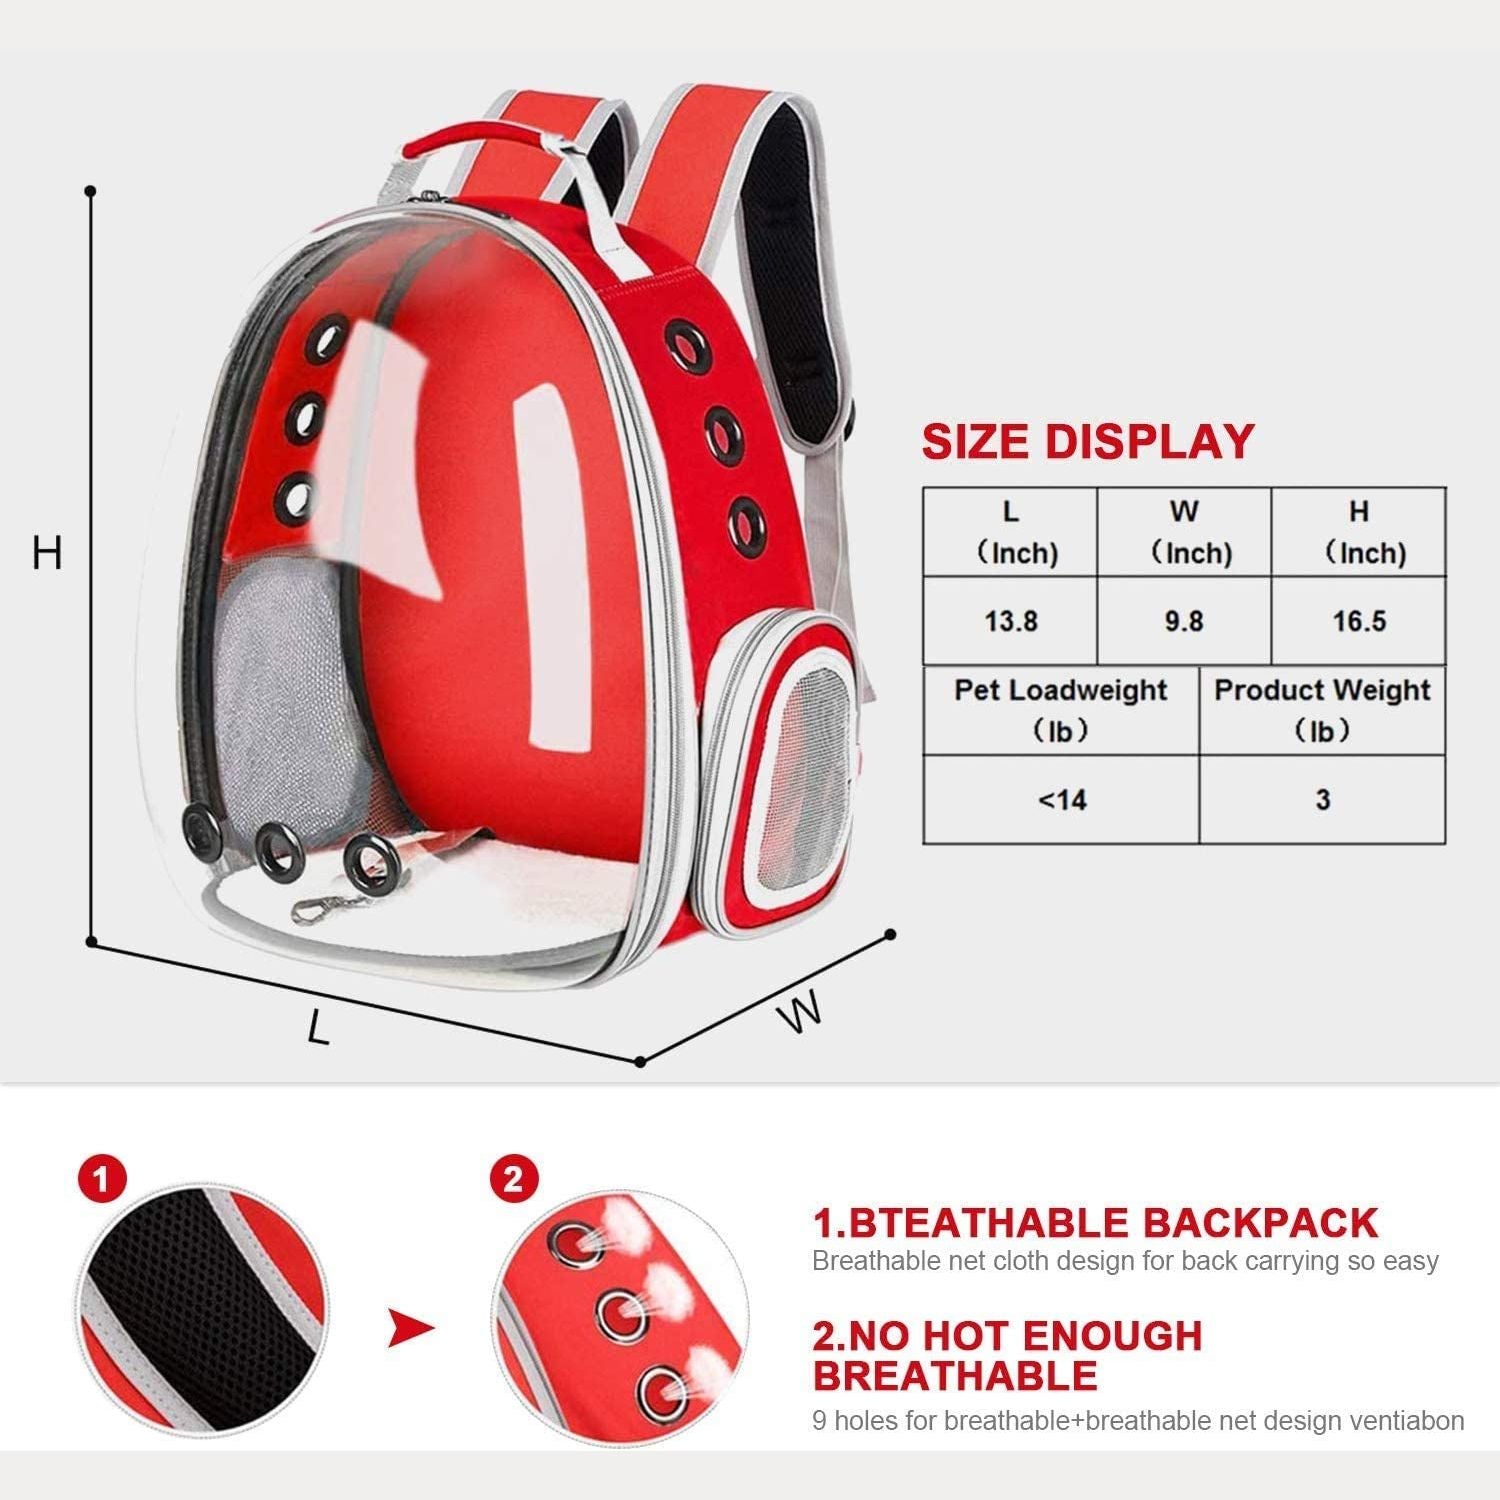 Space Capsule Backpack - Model 1 Red